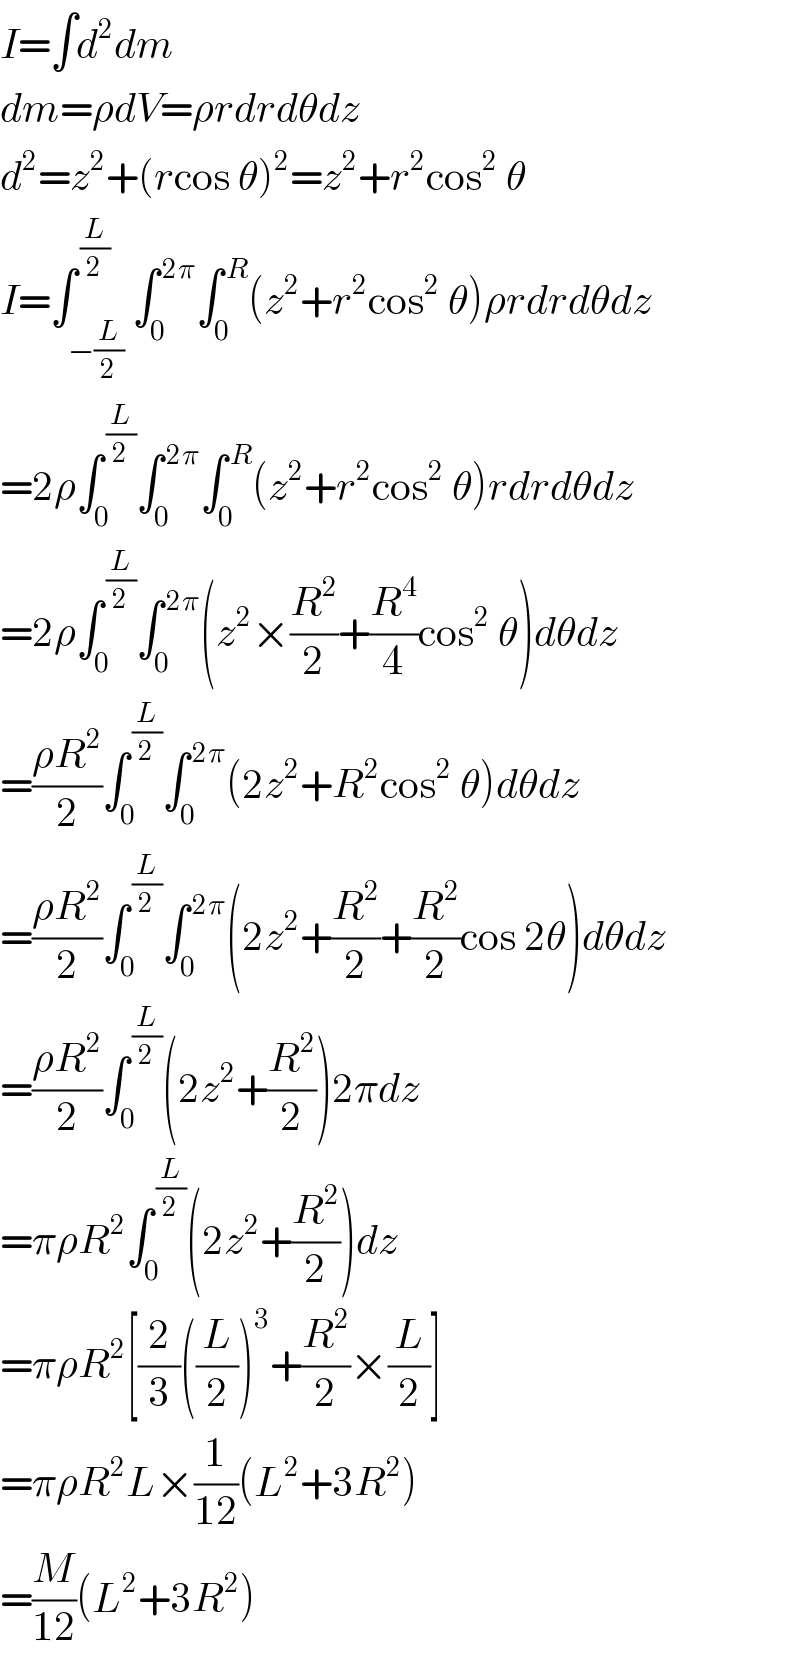 I=∫d^2 dm  dm=ρdV=ρrdrdθdz  d^2 =z^2 +(rcos θ)^2 =z^2 +r^2 cos^2  θ  I=∫_(−(L/2)) ^( (L/2)) ∫_0 ^( 2π) ∫_0 ^( R) (z^2 +r^2 cos^2  θ)ρrdrdθdz  =2ρ∫_0 ^( (L/2)) ∫_0 ^( 2π) ∫_0 ^( R) (z^2 +r^2 cos^2  θ)rdrdθdz  =2ρ∫_0 ^( (L/2)) ∫_0 ^( 2π) (z^2 ×(R^2 /2)+(R^4 /4)cos^2  θ)dθdz  =((ρR^2 )/2)∫_0 ^( (L/2)) ∫_0 ^( 2π) (2z^2 +R^2 cos^2  θ)dθdz  =((ρR^2 )/2)∫_0 ^( (L/2)) ∫_0 ^( 2π) (2z^2 +(R^2 /2)+(R^2 /2)cos 2θ)dθdz  =((ρR^2 )/2)∫_0 ^( (L/2)) (2z^2 +(R^2 /2))2πdz  =πρR^2 ∫_0 ^( (L/2)) (2z^2 +(R^2 /2))dz  =πρR^2 [(2/3)((L/2))^3 +(R^2 /2)×(L/2)]  =πρR^2 L×(1/(12))(L^2 +3R^2 )  =(M/(12))(L^2 +3R^2 )  